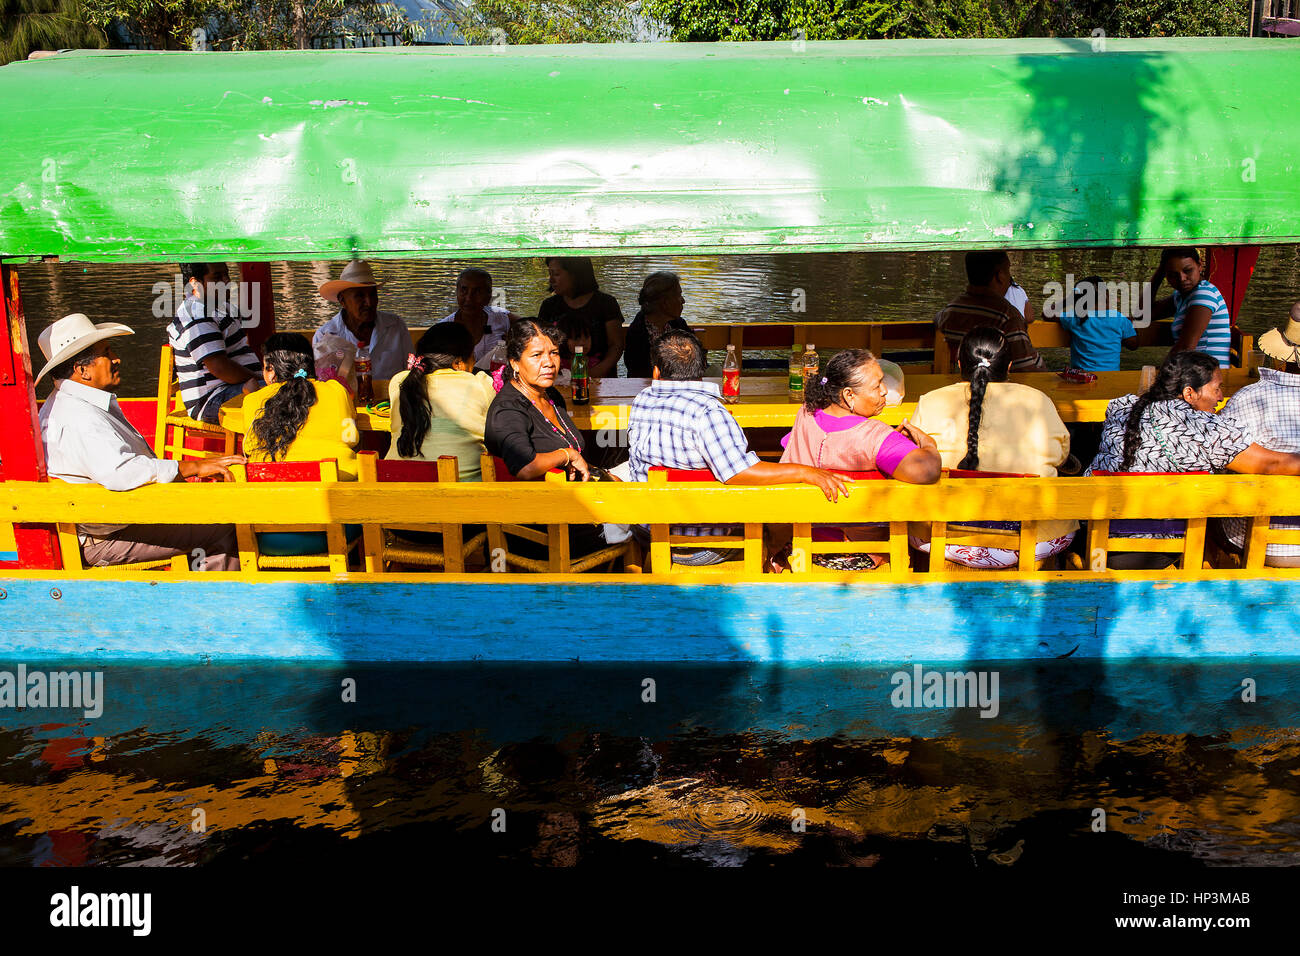 Trajinera on Canal, Xochimilco, Mexico City, Mexico Stock Photo